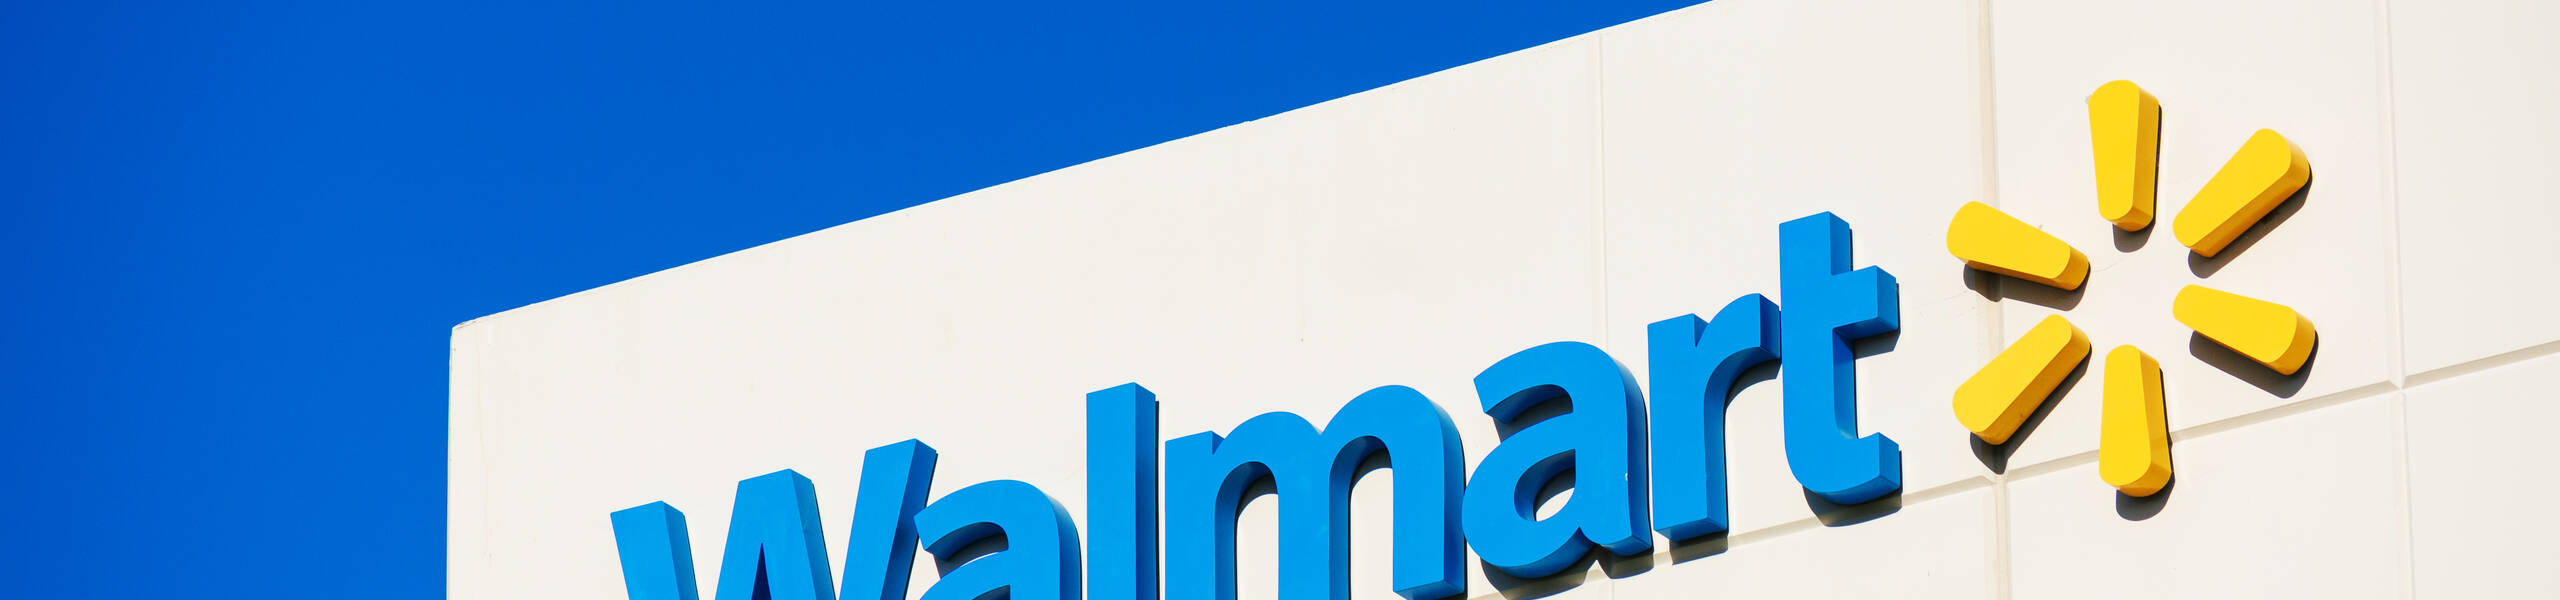 Walmart Publicará sus Ganancias el 17 de Febrero